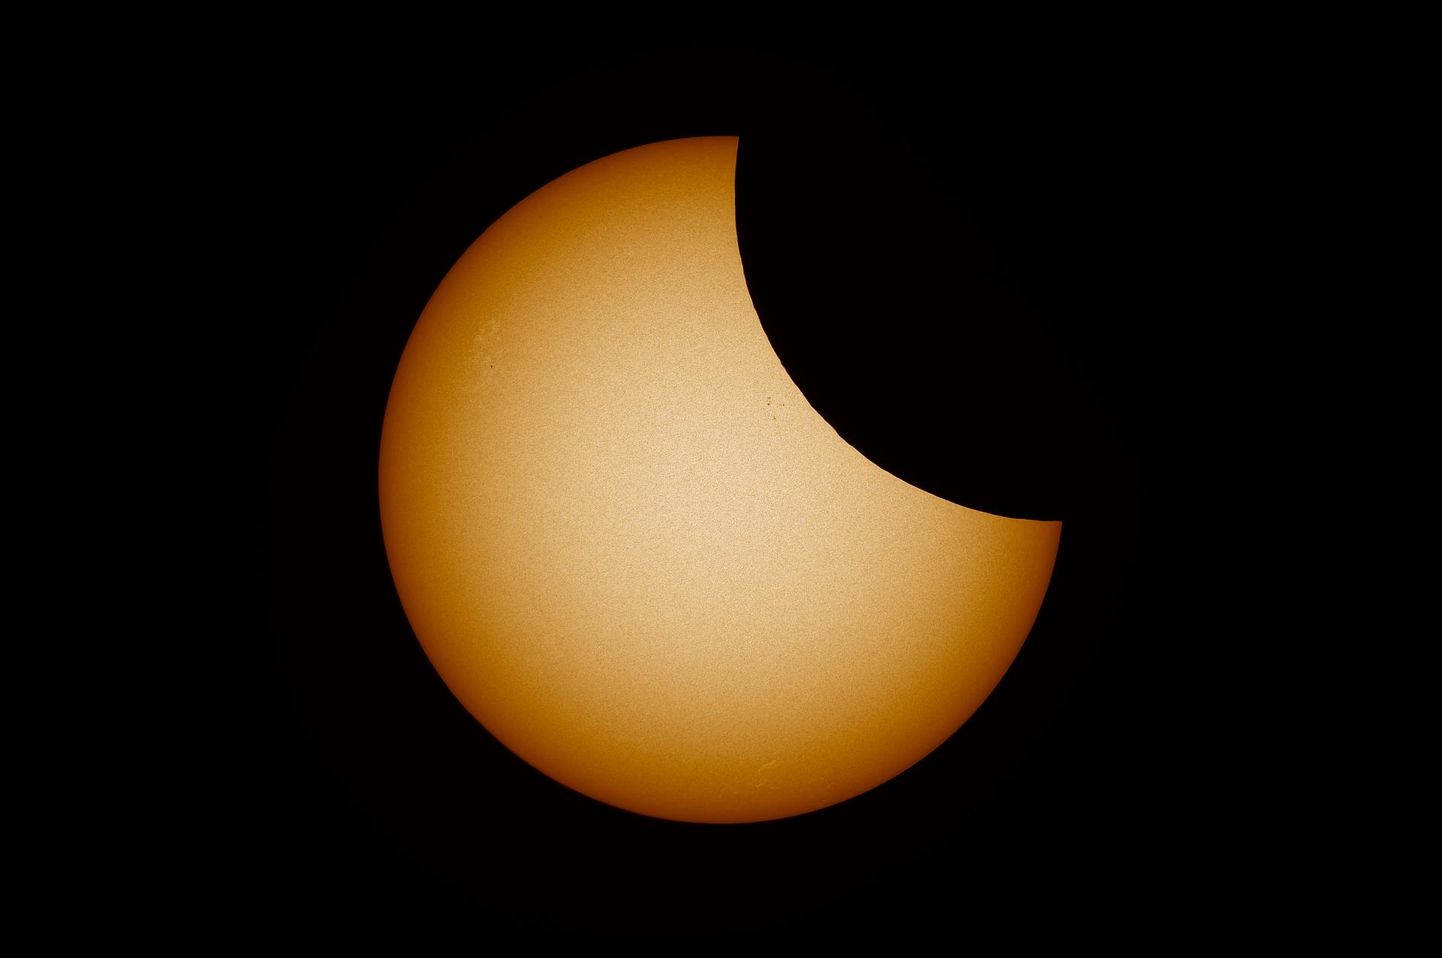 Eelmise aasta 10. juunil toimunud osaline päikesevarjutus läbi teleskoobi Tõrvas. Päikese pinnal on näha mõningaid väiksemaid plekke ja Kuu ebatasast siluetti.